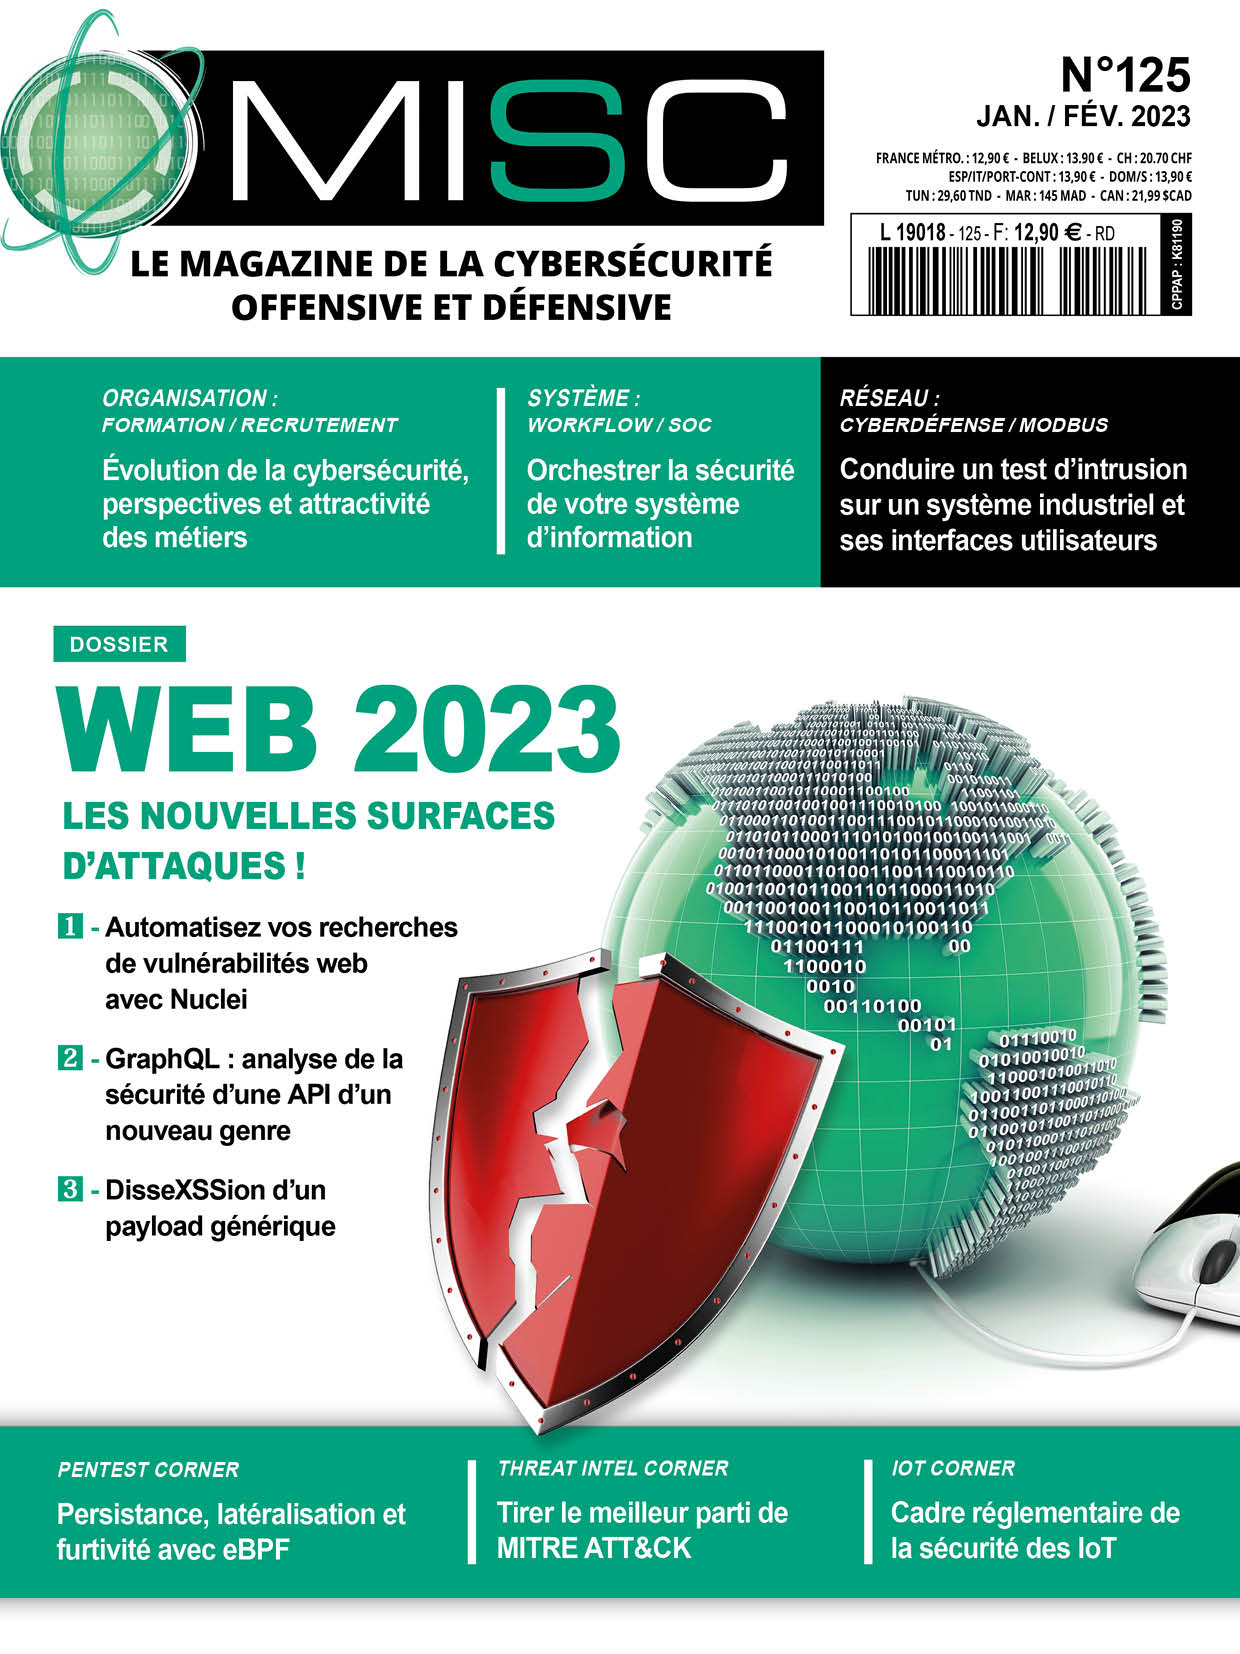 Web 2023 - Les nouvelles surfaces d’attaques !